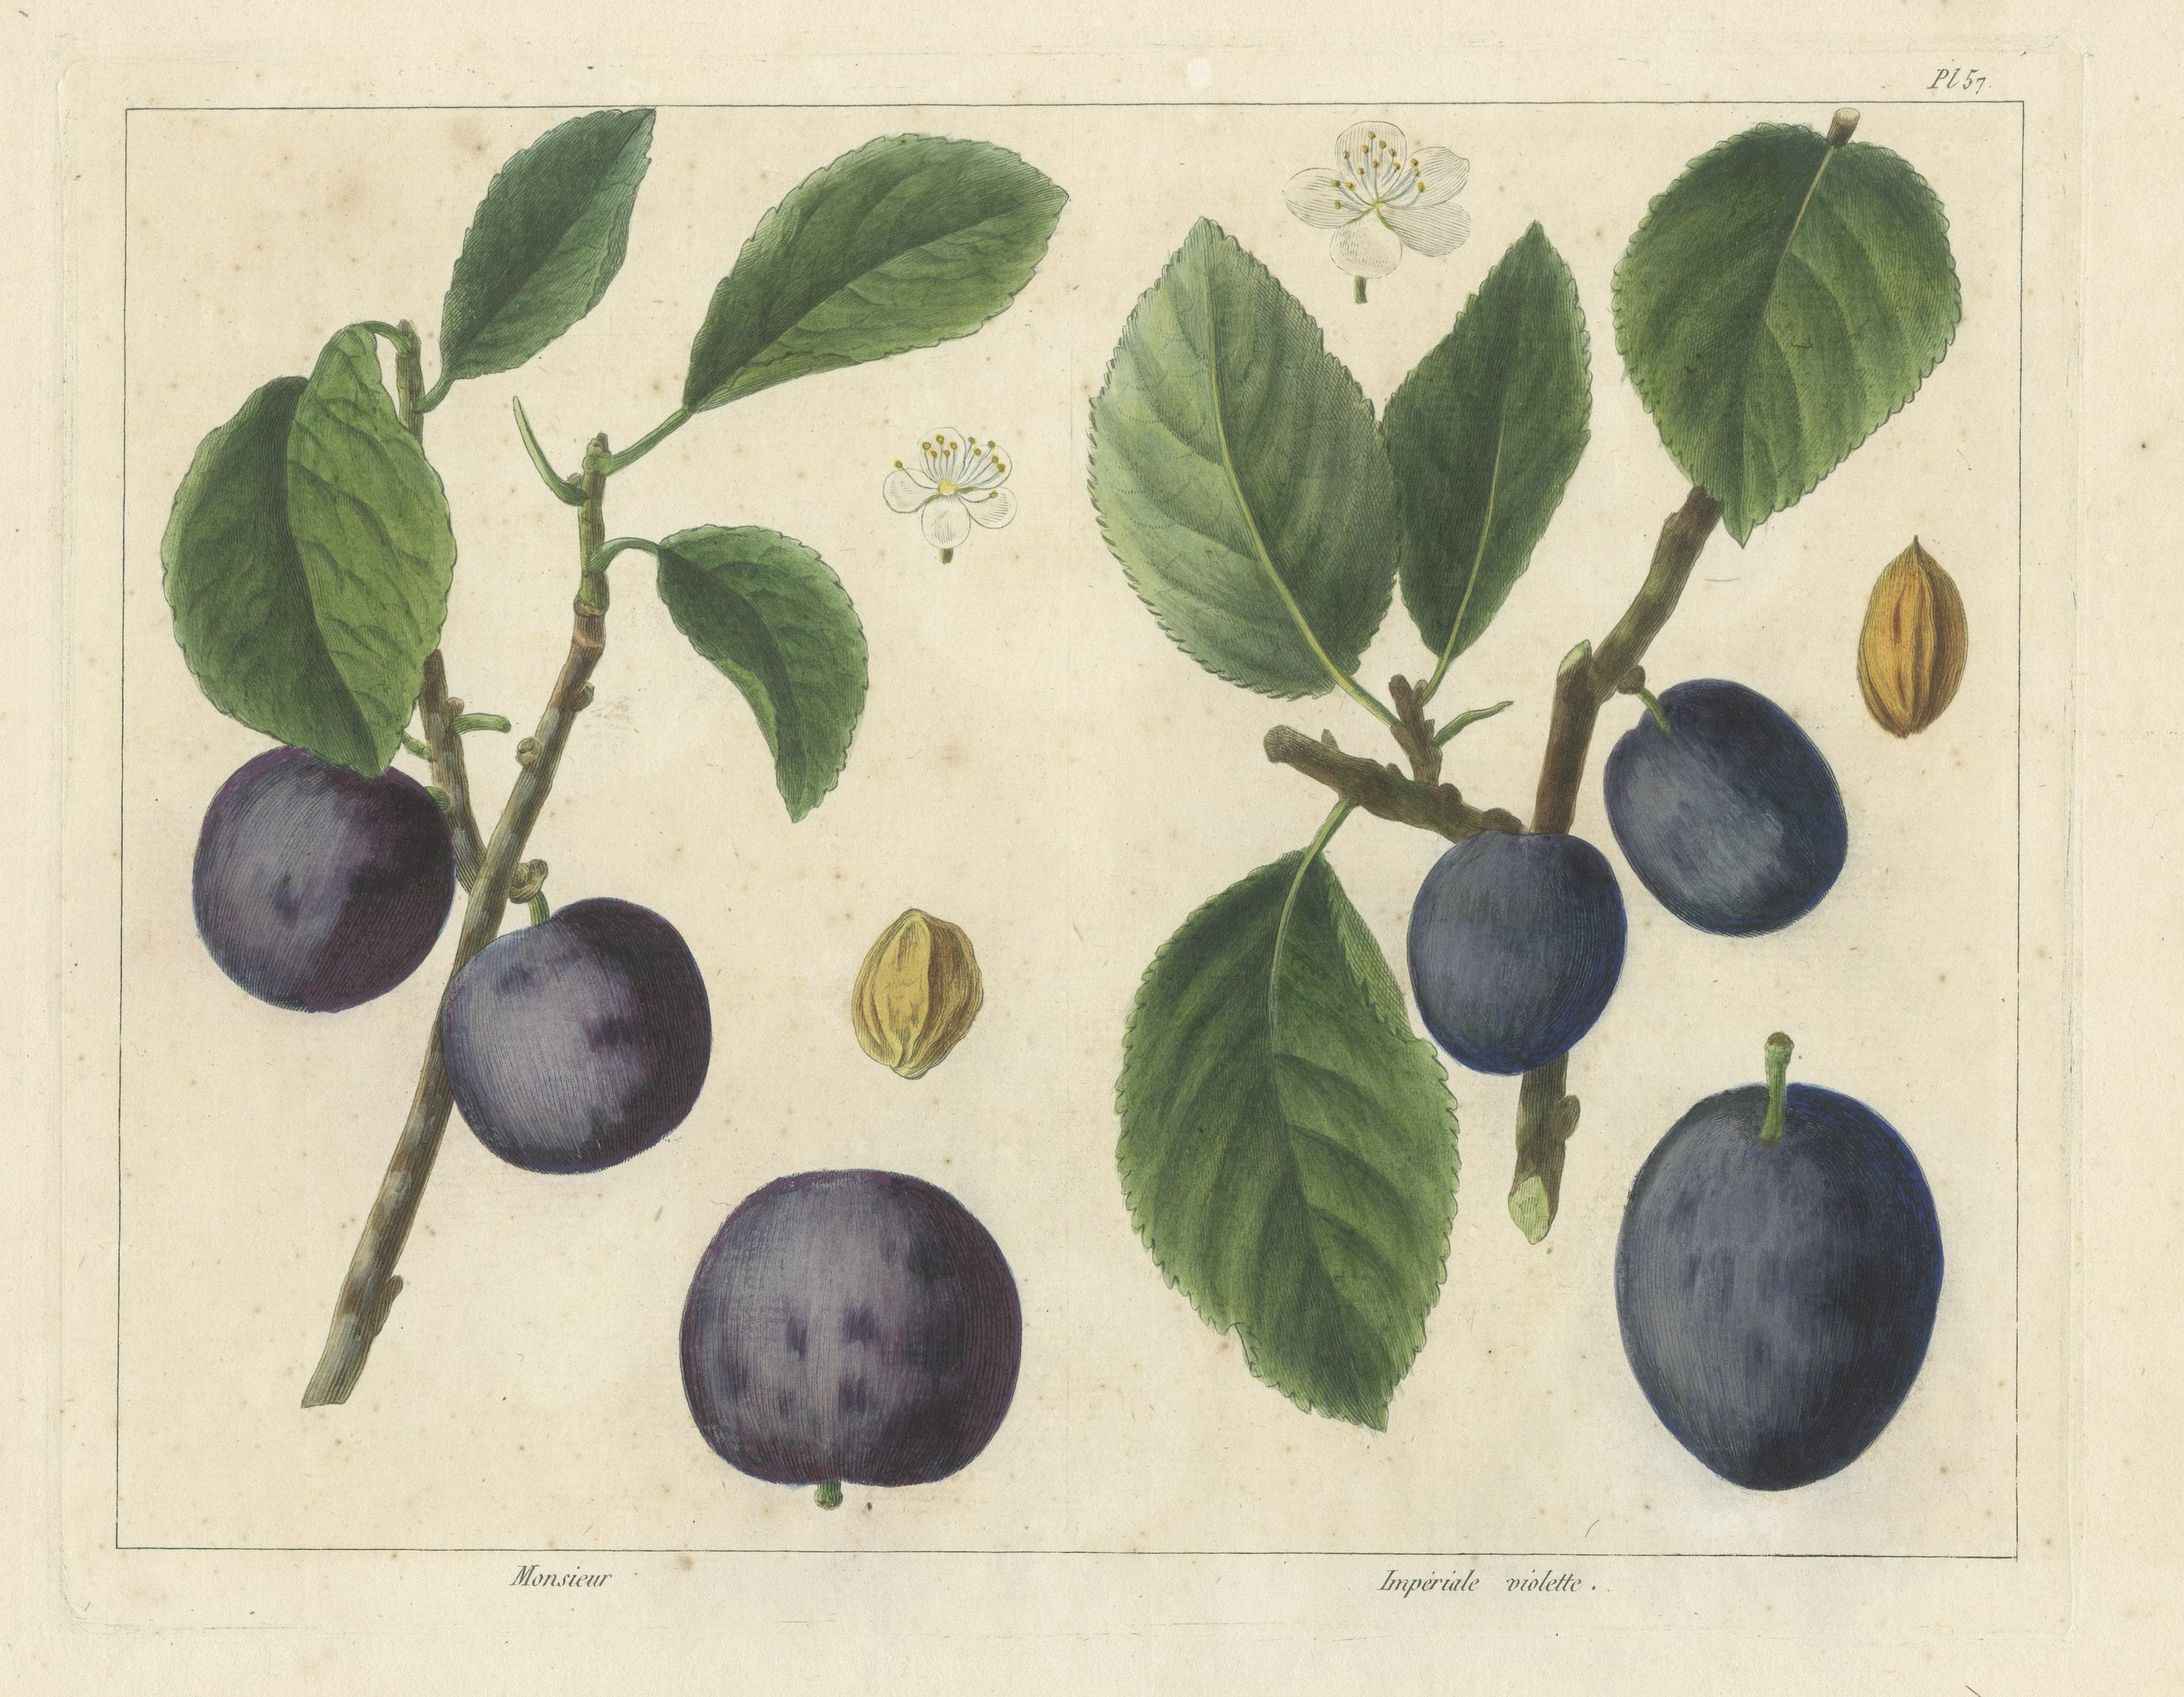 Gravure ancienne de variétés de prunes intitulée 'Monsieur - Impériale violette'. Cette estampe provient de 